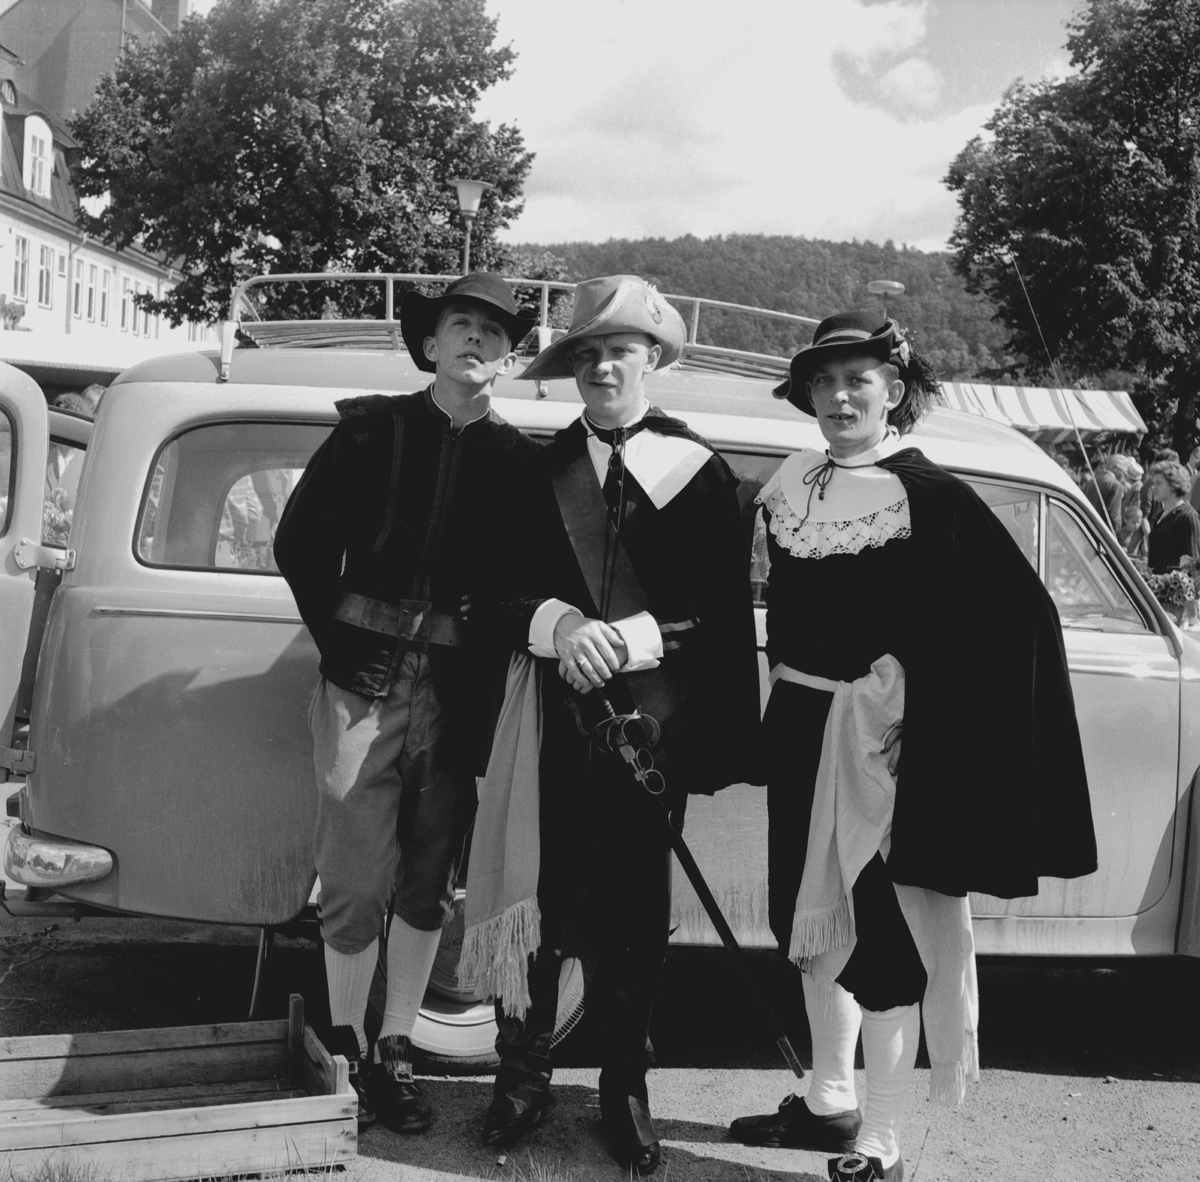 Längst till vänster står Jan Svensson med två män detta är i samband med ett Stora Träffen arrangemang i augusti 1961.